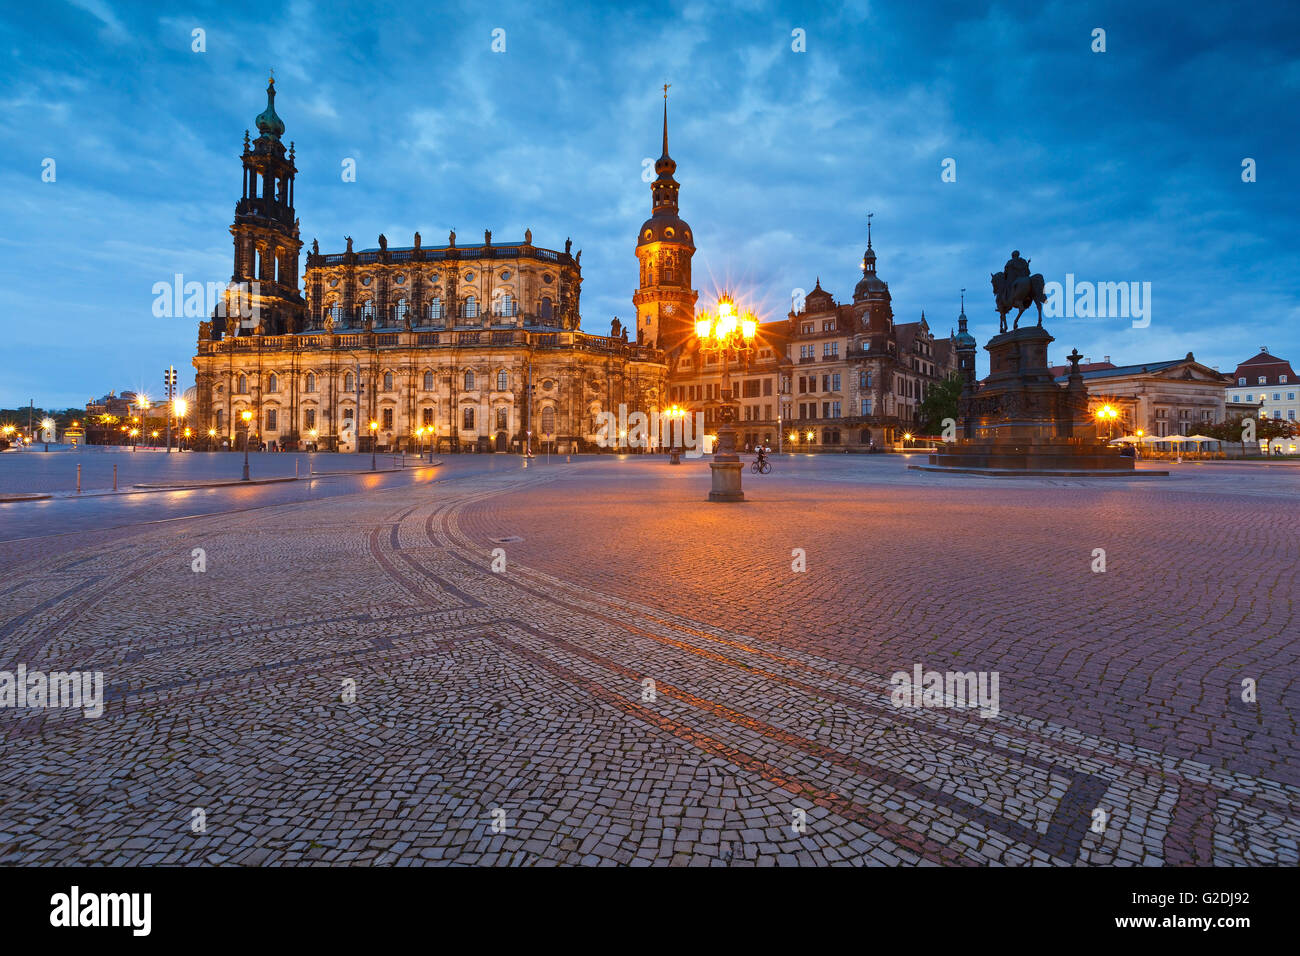 Blick auf den Königspalast und die Kathedrale in der Altstadt von Dresden, Deutschland. Stockfoto